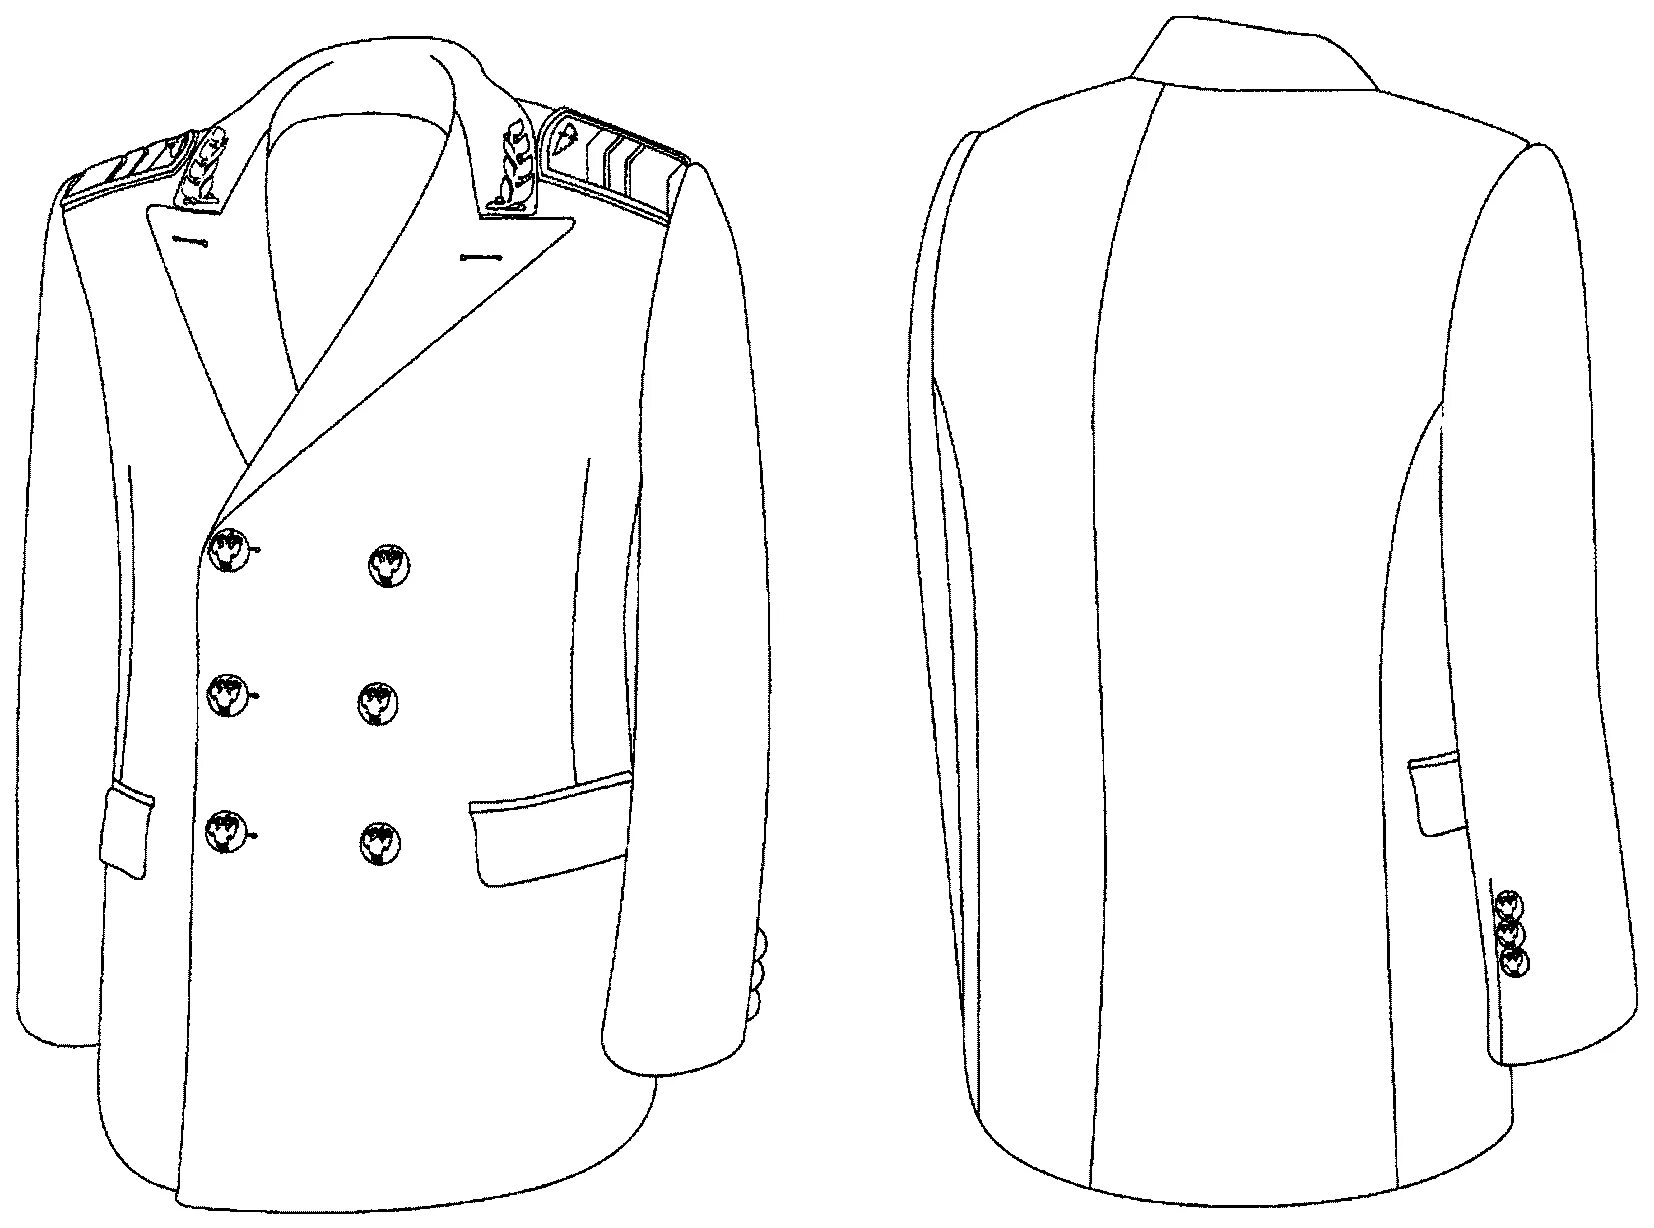 Китель. Технический рисунок пиджака. Пиджак мужской рисунок. Технический эскиз пиджака сбоку. Двубортная домашняя или форменная куртка